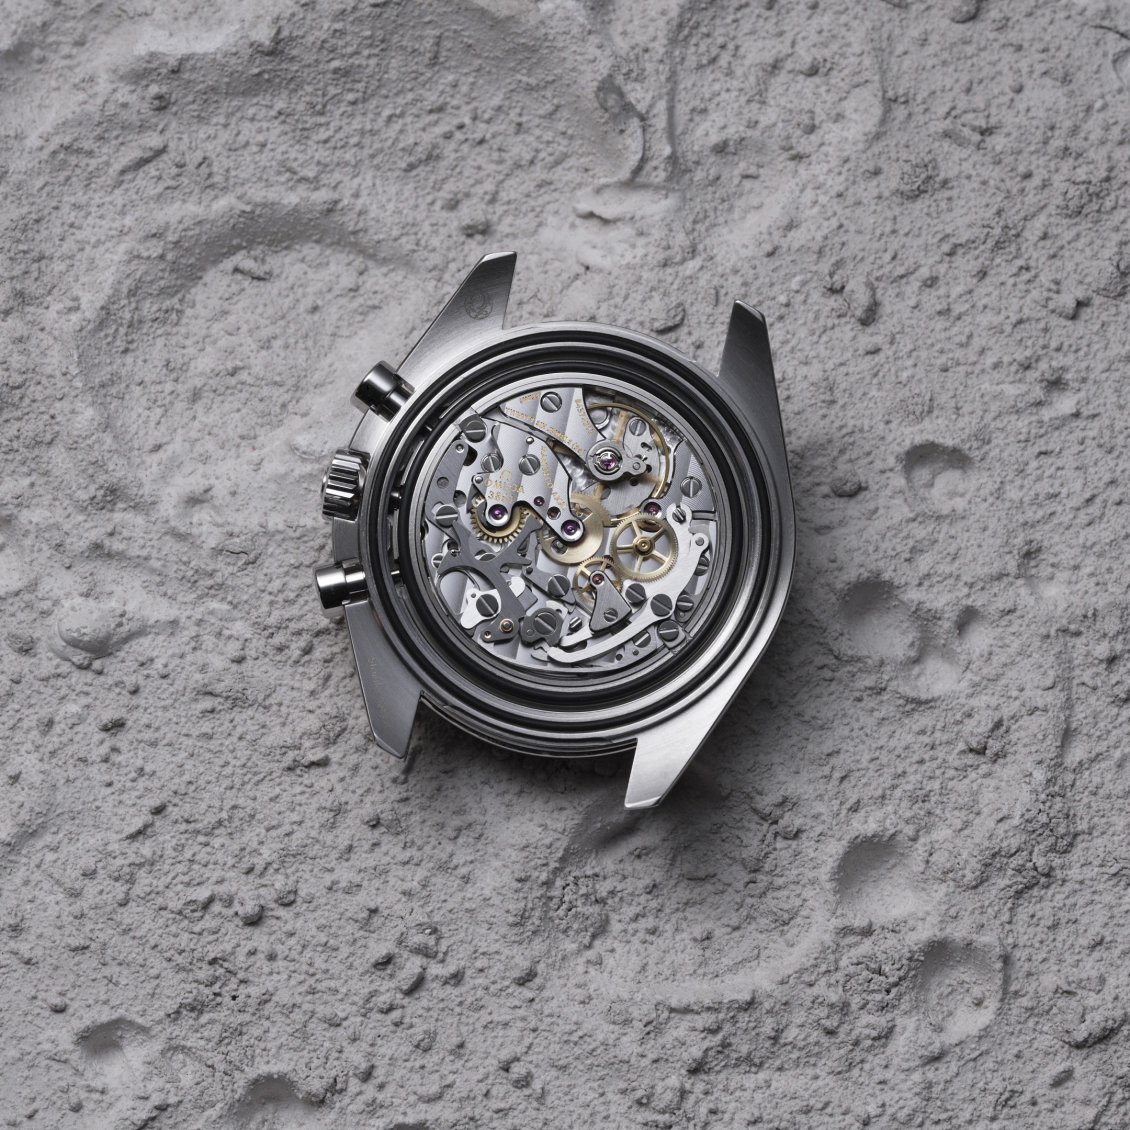 Vom Mondlicht zum Tageslicht: Omegas Speedmaster Moonwatch erstrahlt in Weiß